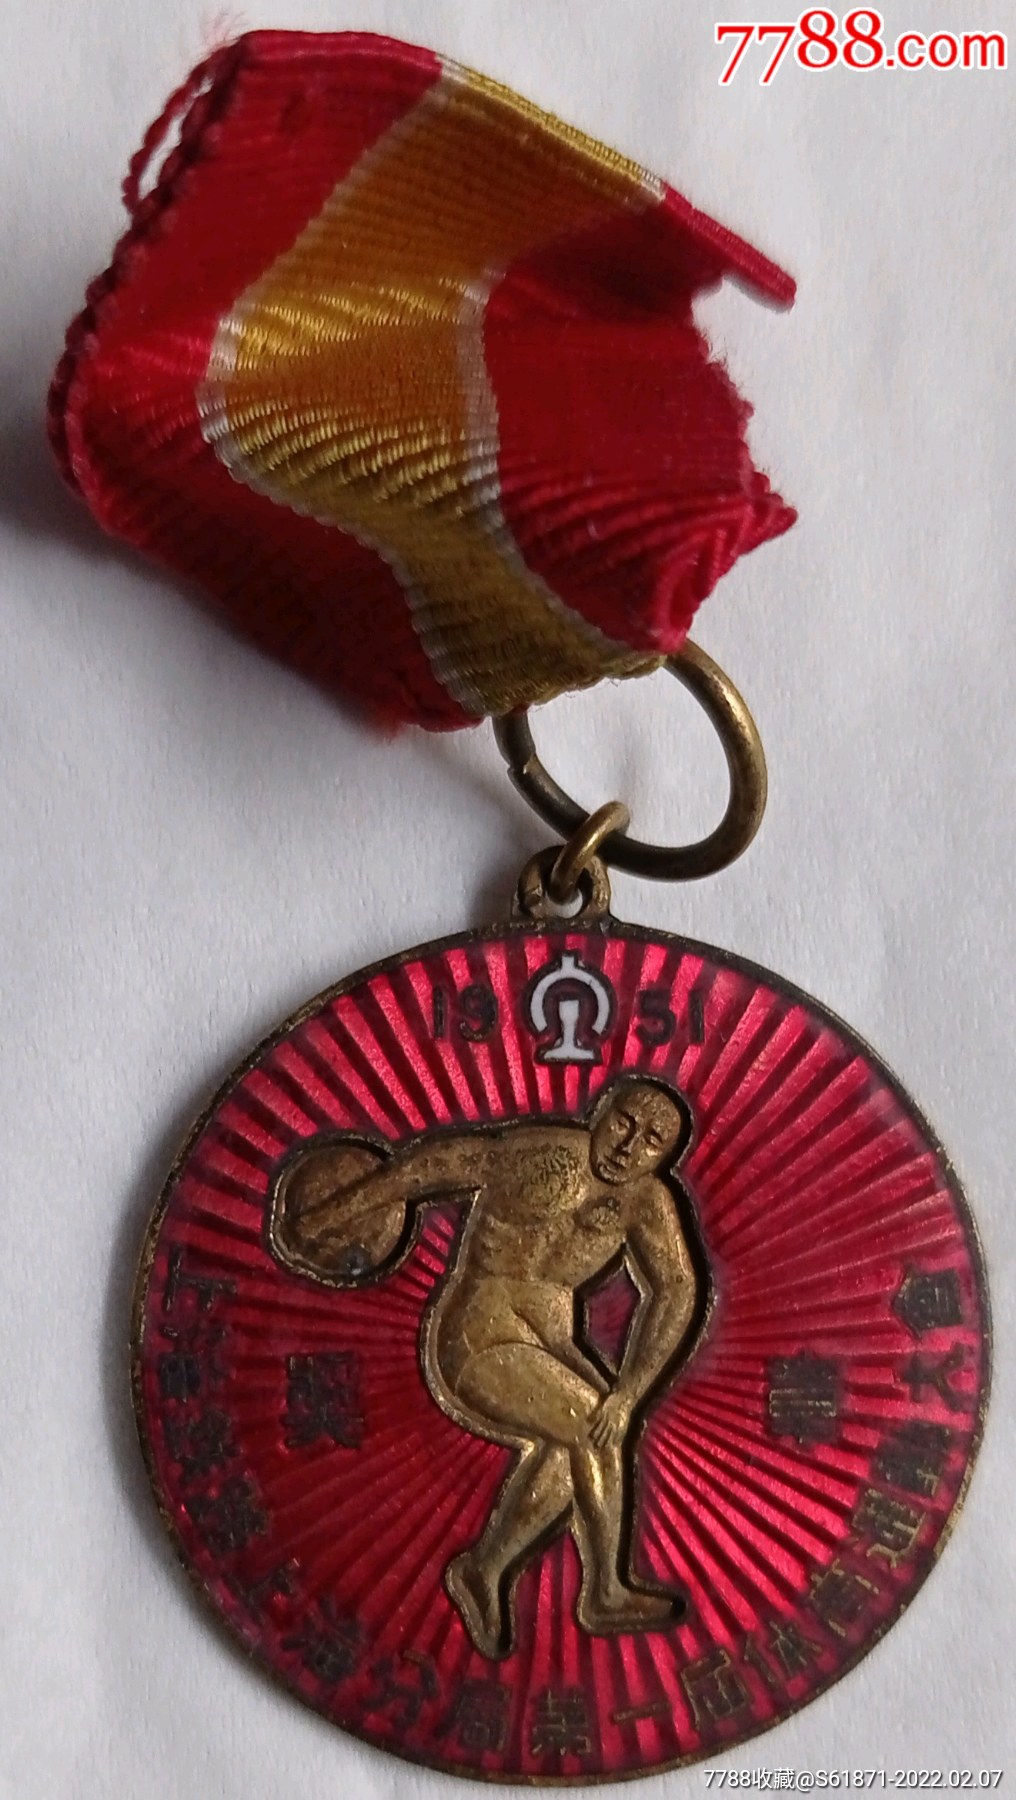 1951年上海铁路上海分局第一届体育运动大会奖章